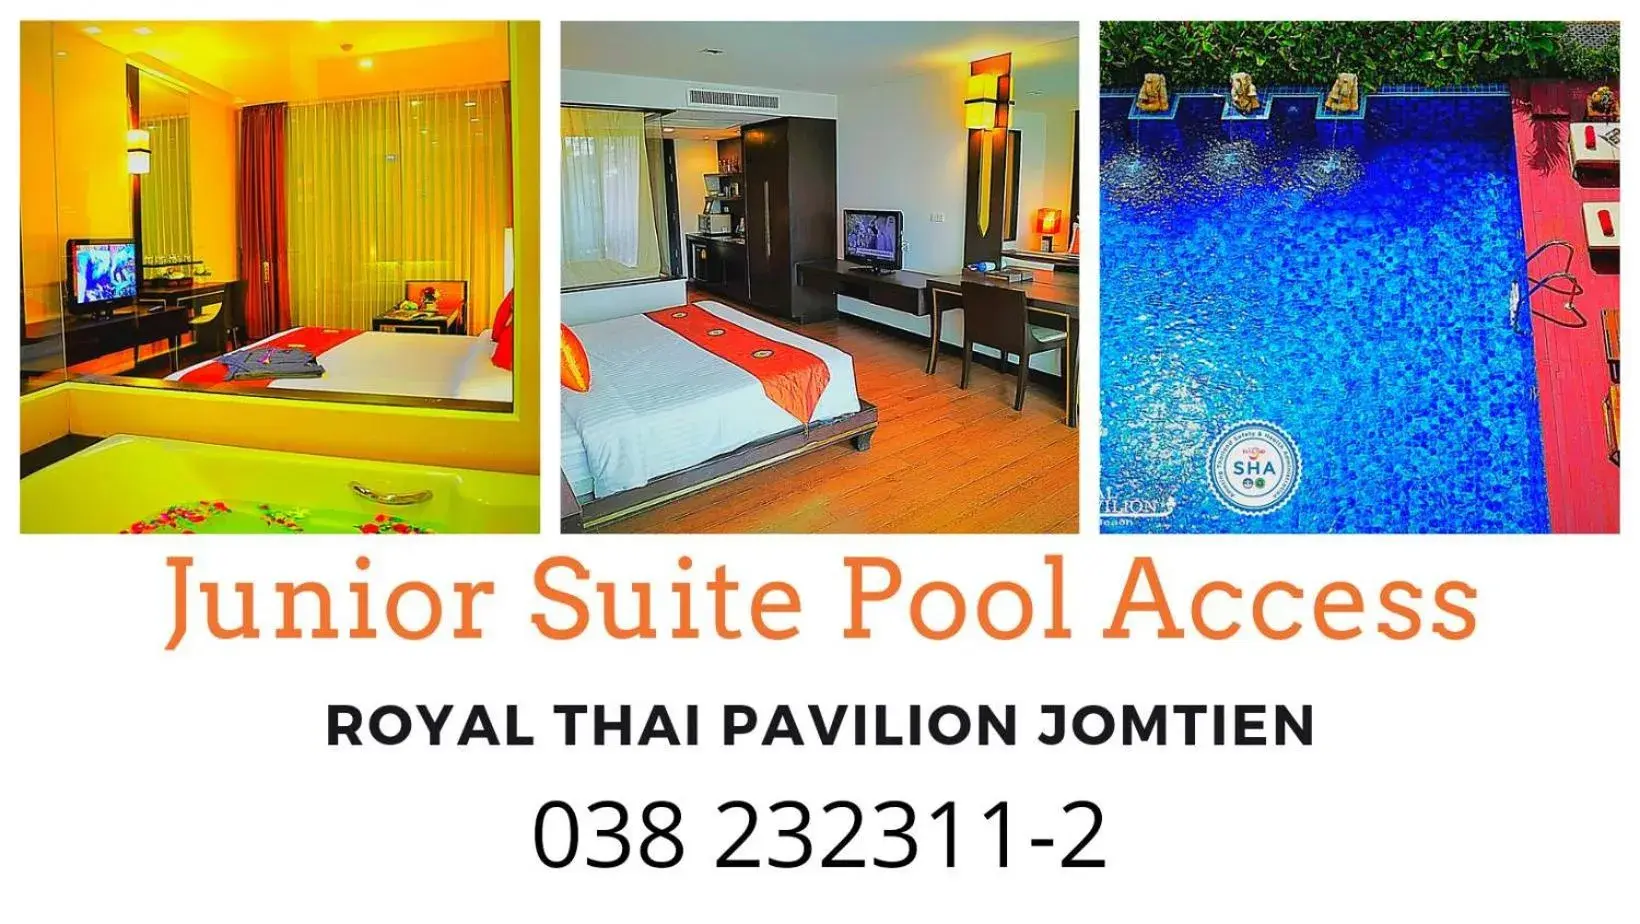 Royal Thai Pavilion Hotel